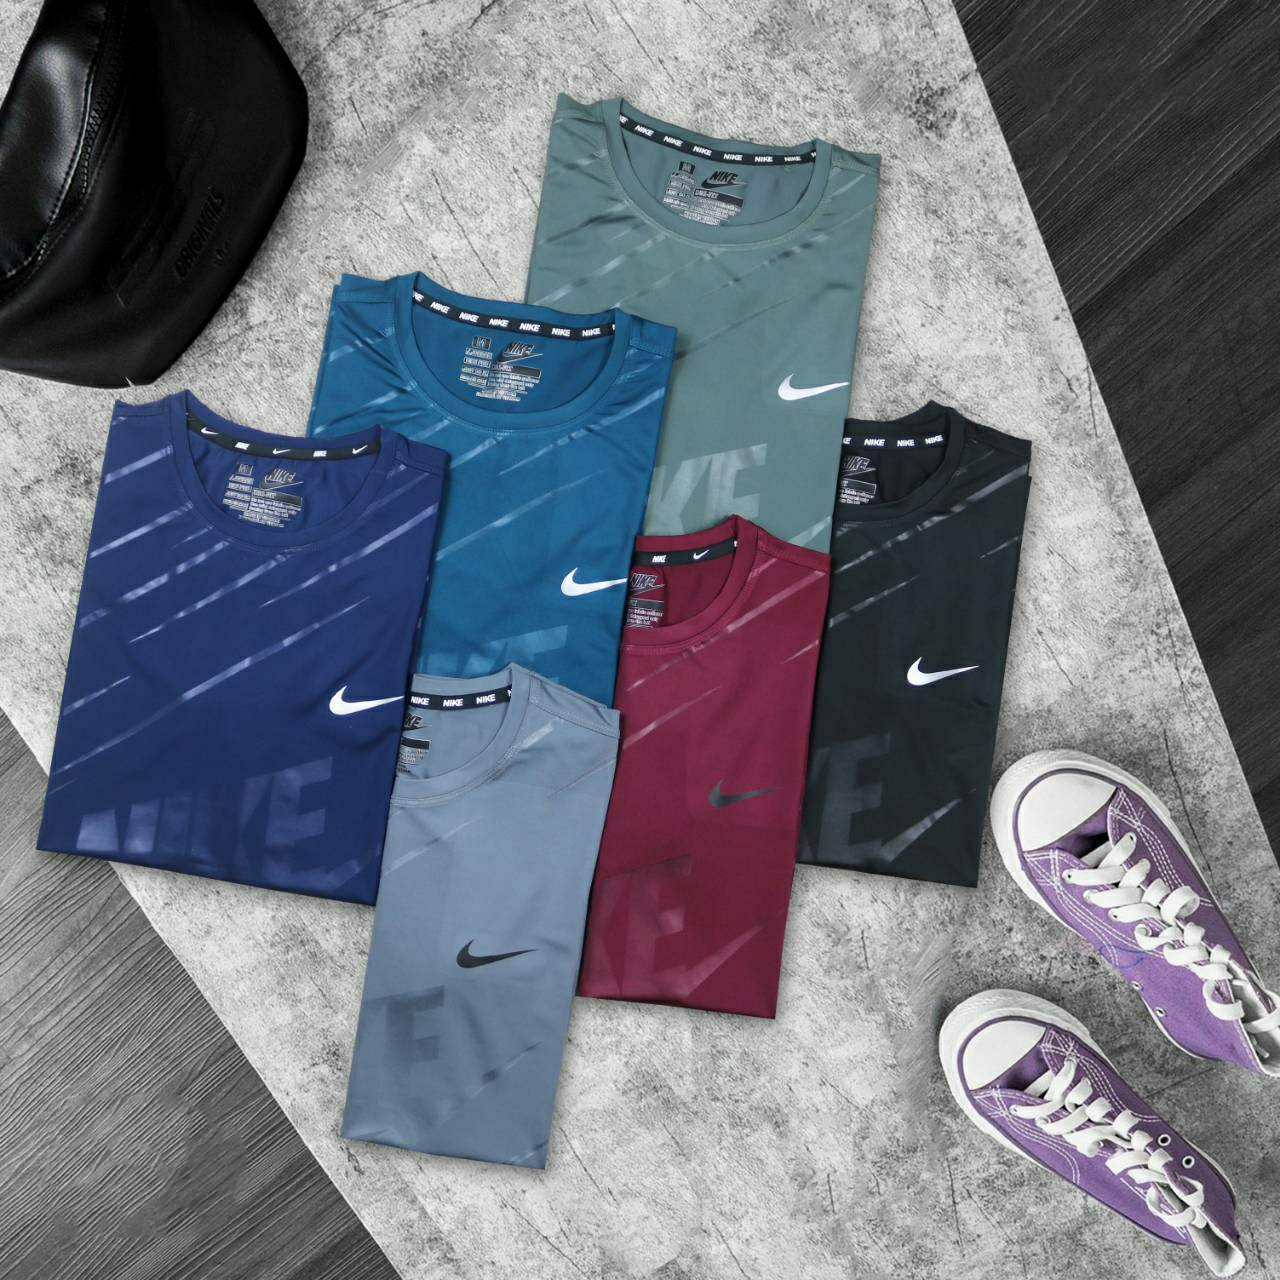 【ข้อเสนอพิเศษ ของแท้】 Nike Unisex เสื้อยืดกีฬา Y001-02